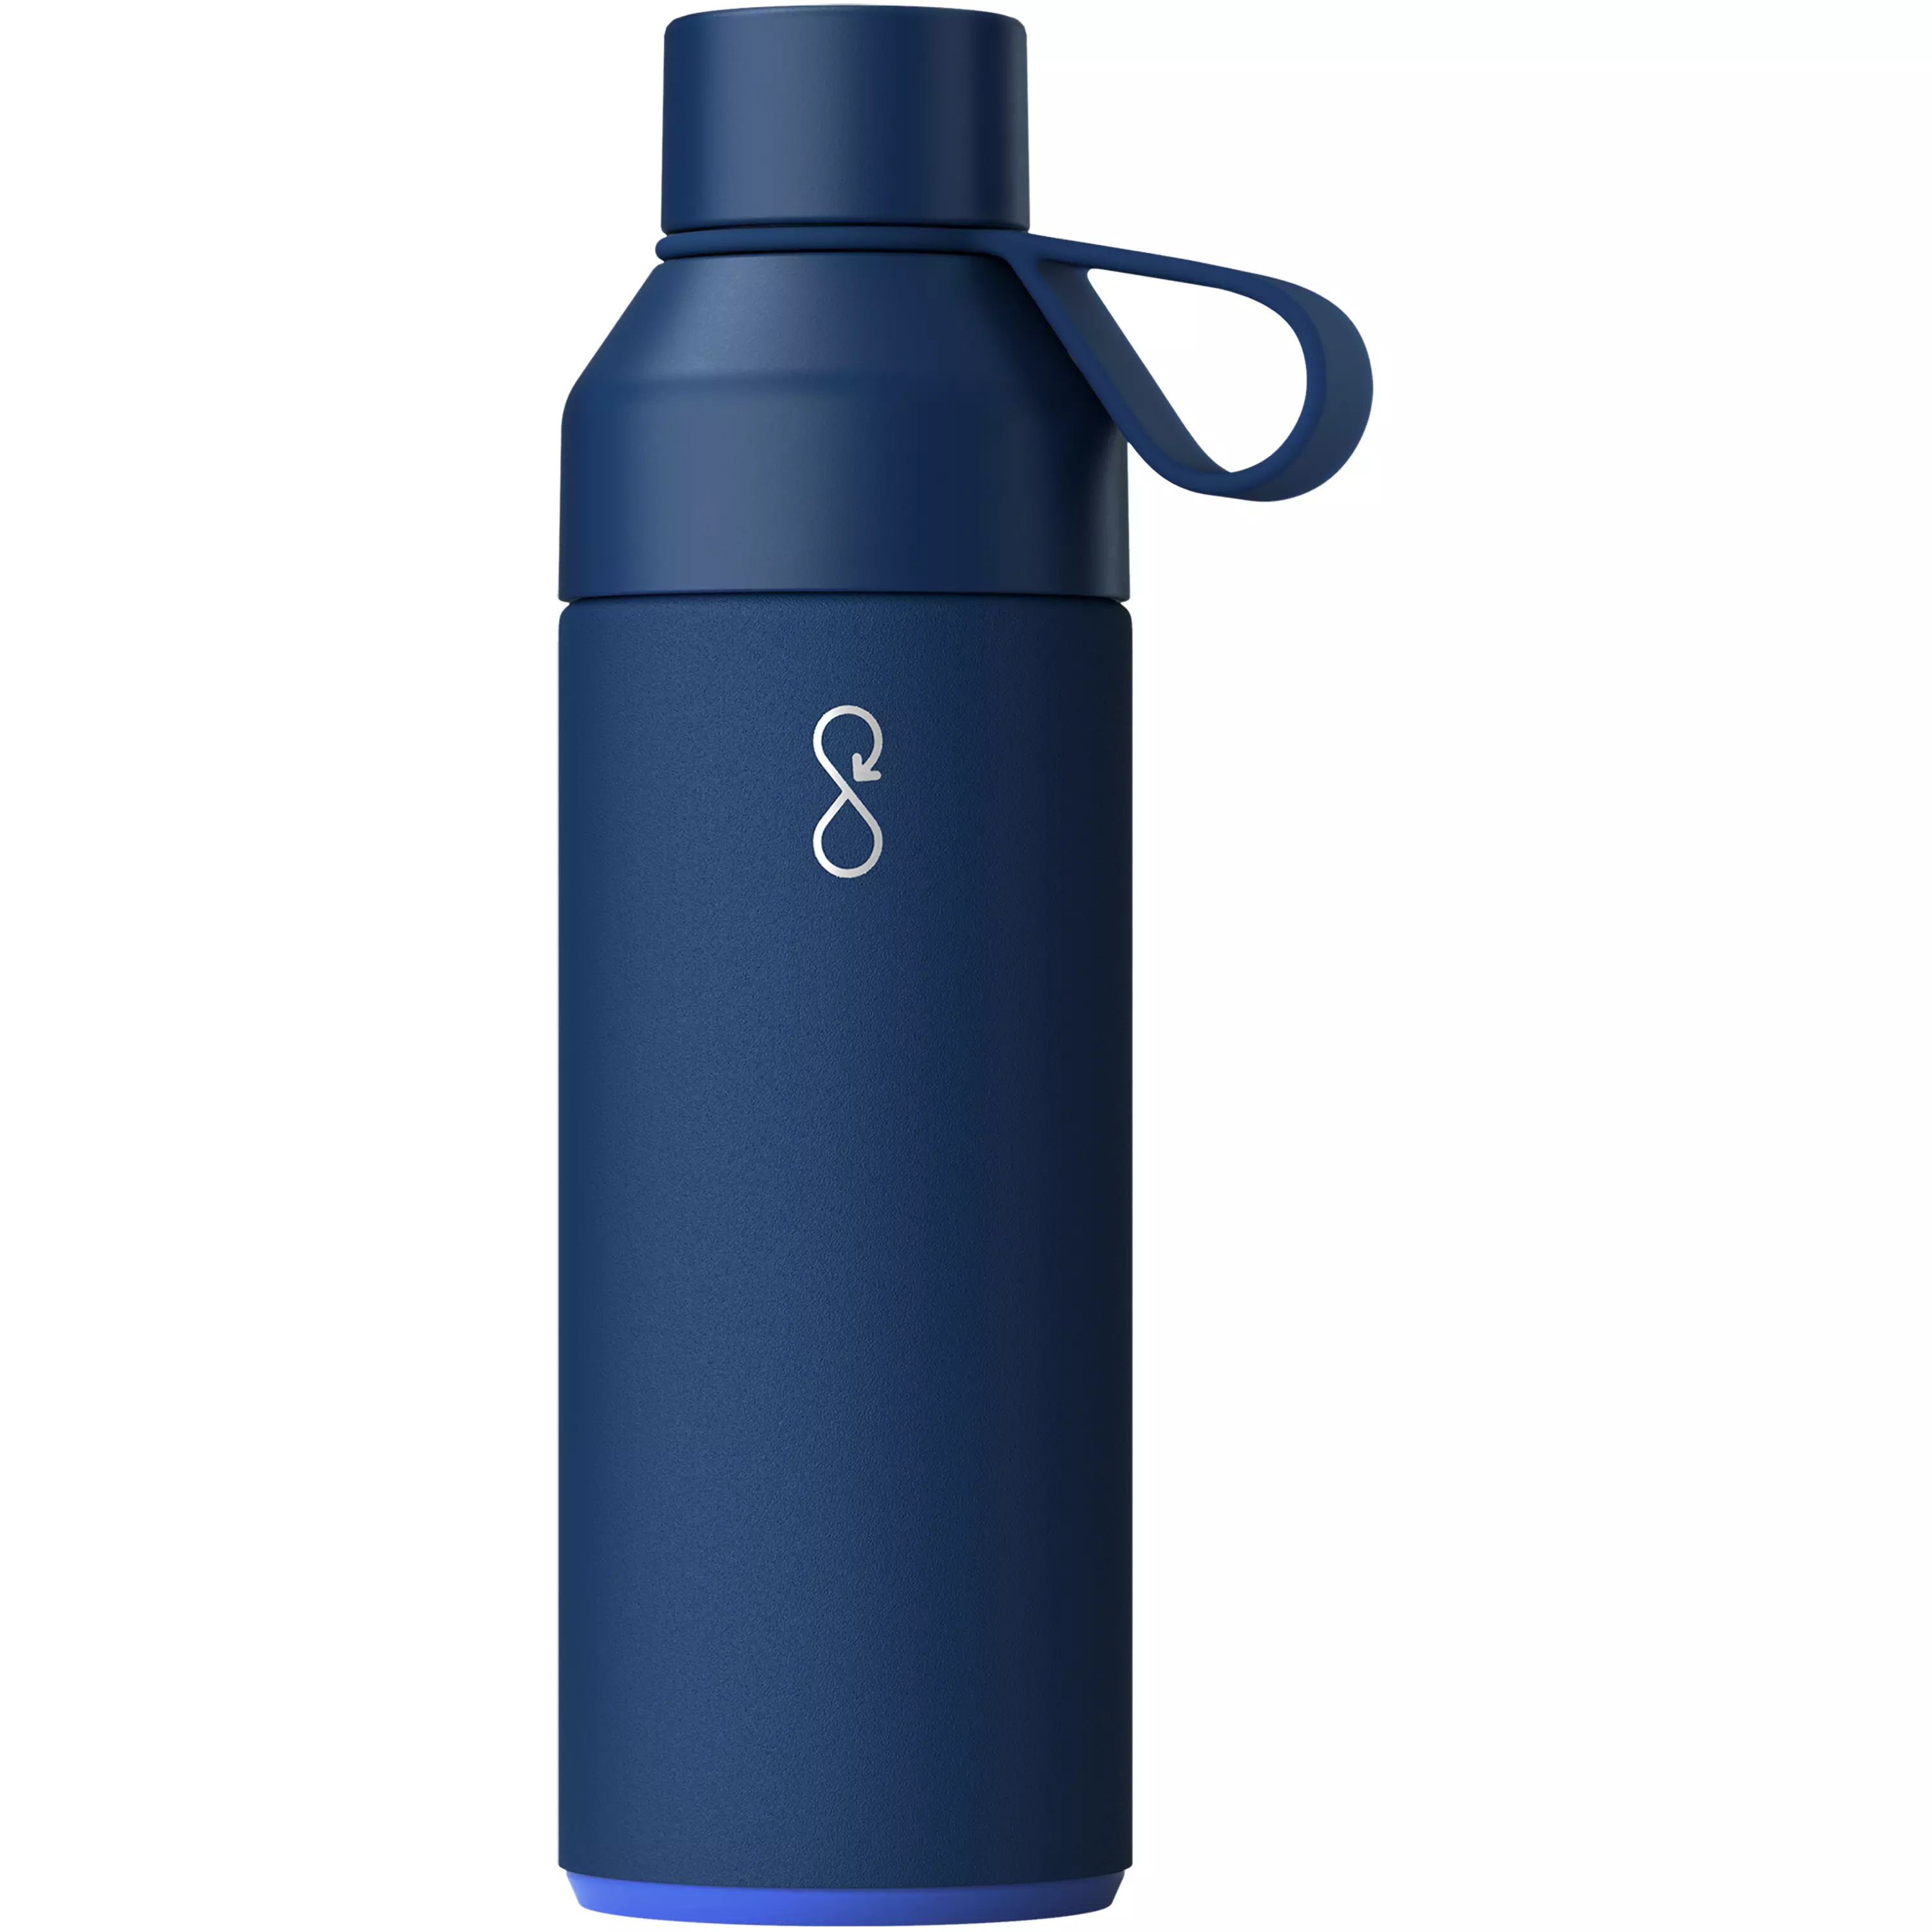 Ocean Bottle vacuümgeïsoleerde waterfles van 500 ml